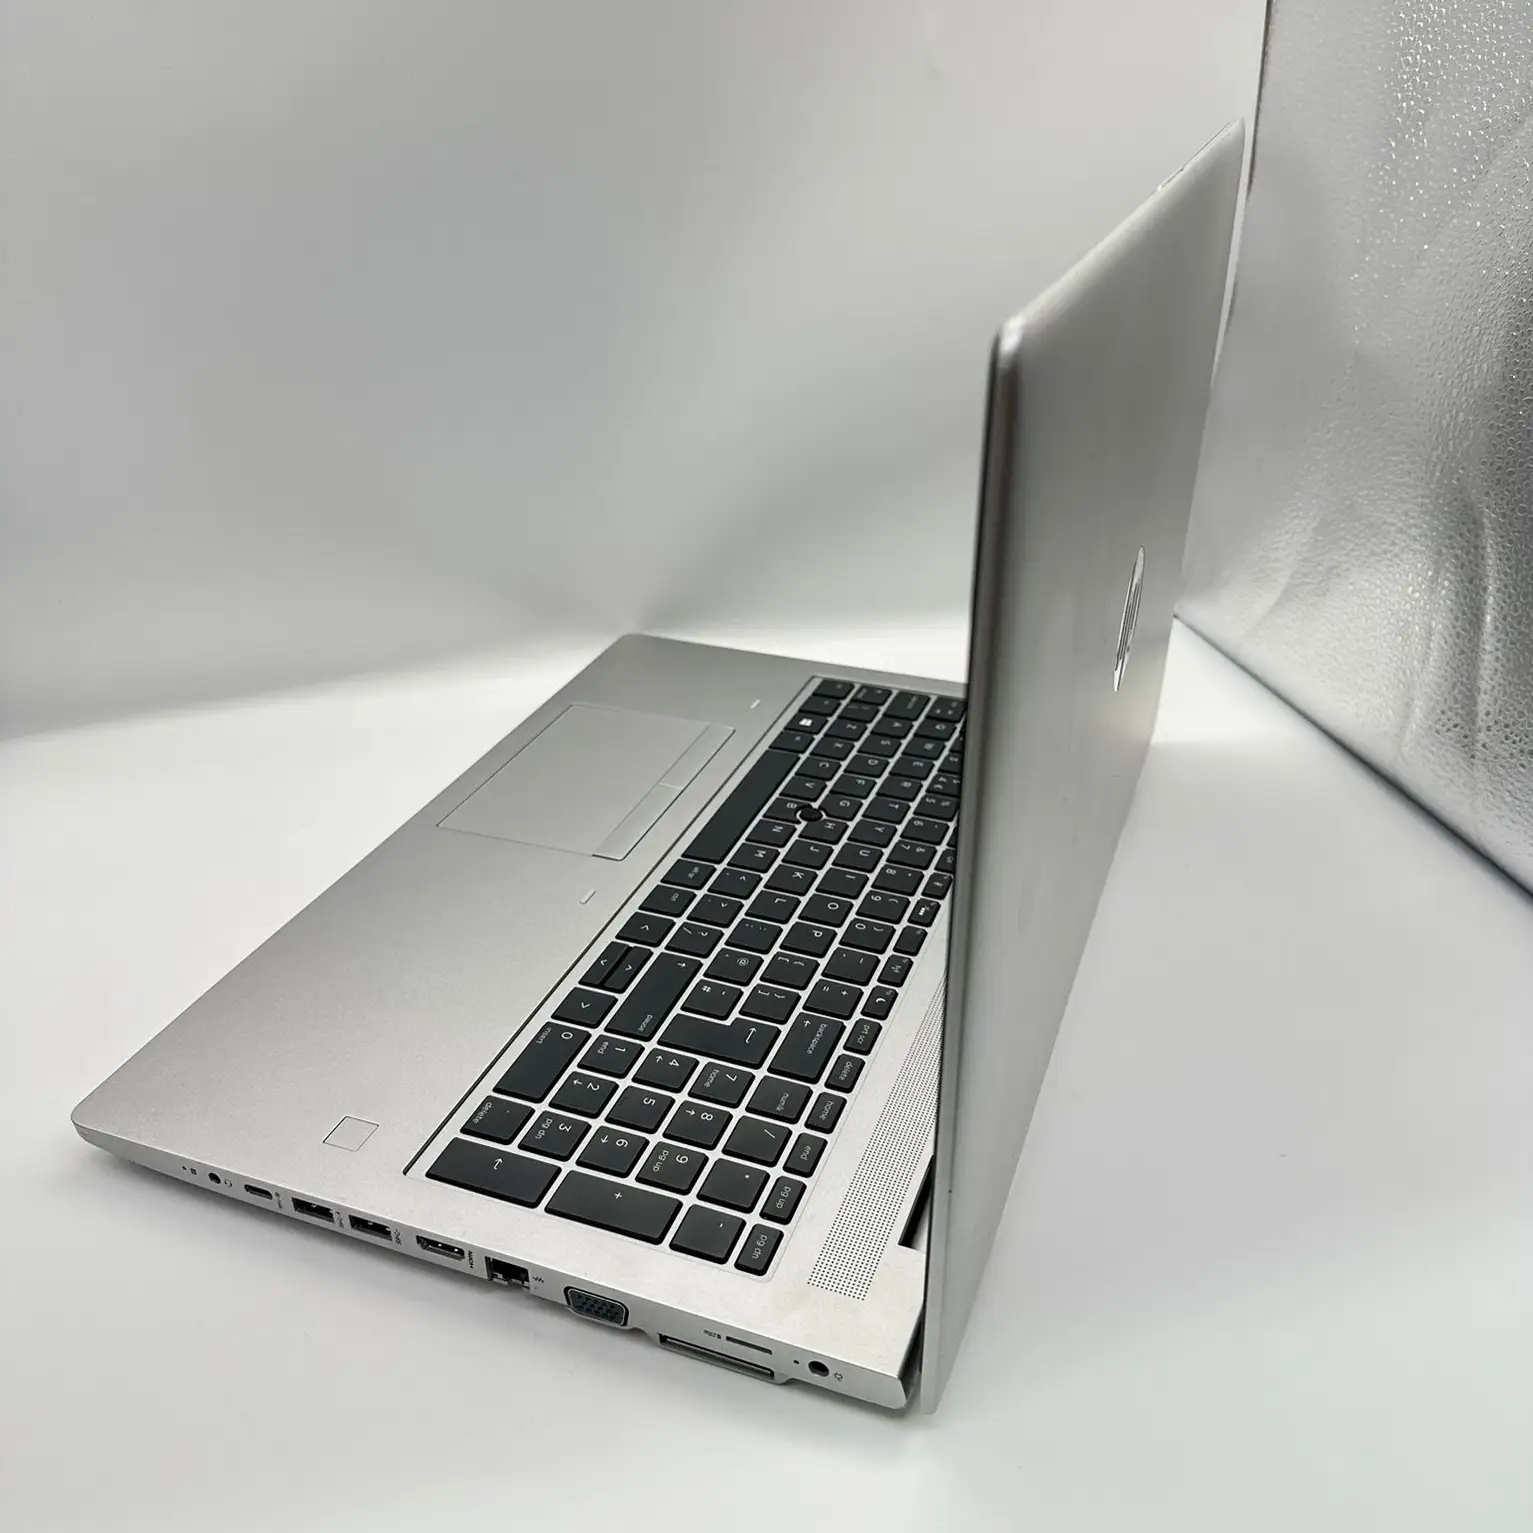 HP ProBook 650 G5   Intel core i5-8265U CPU 1.80Gh (8 CPUs) 8Gb Ram  256 Gb SSD Slim Laptop